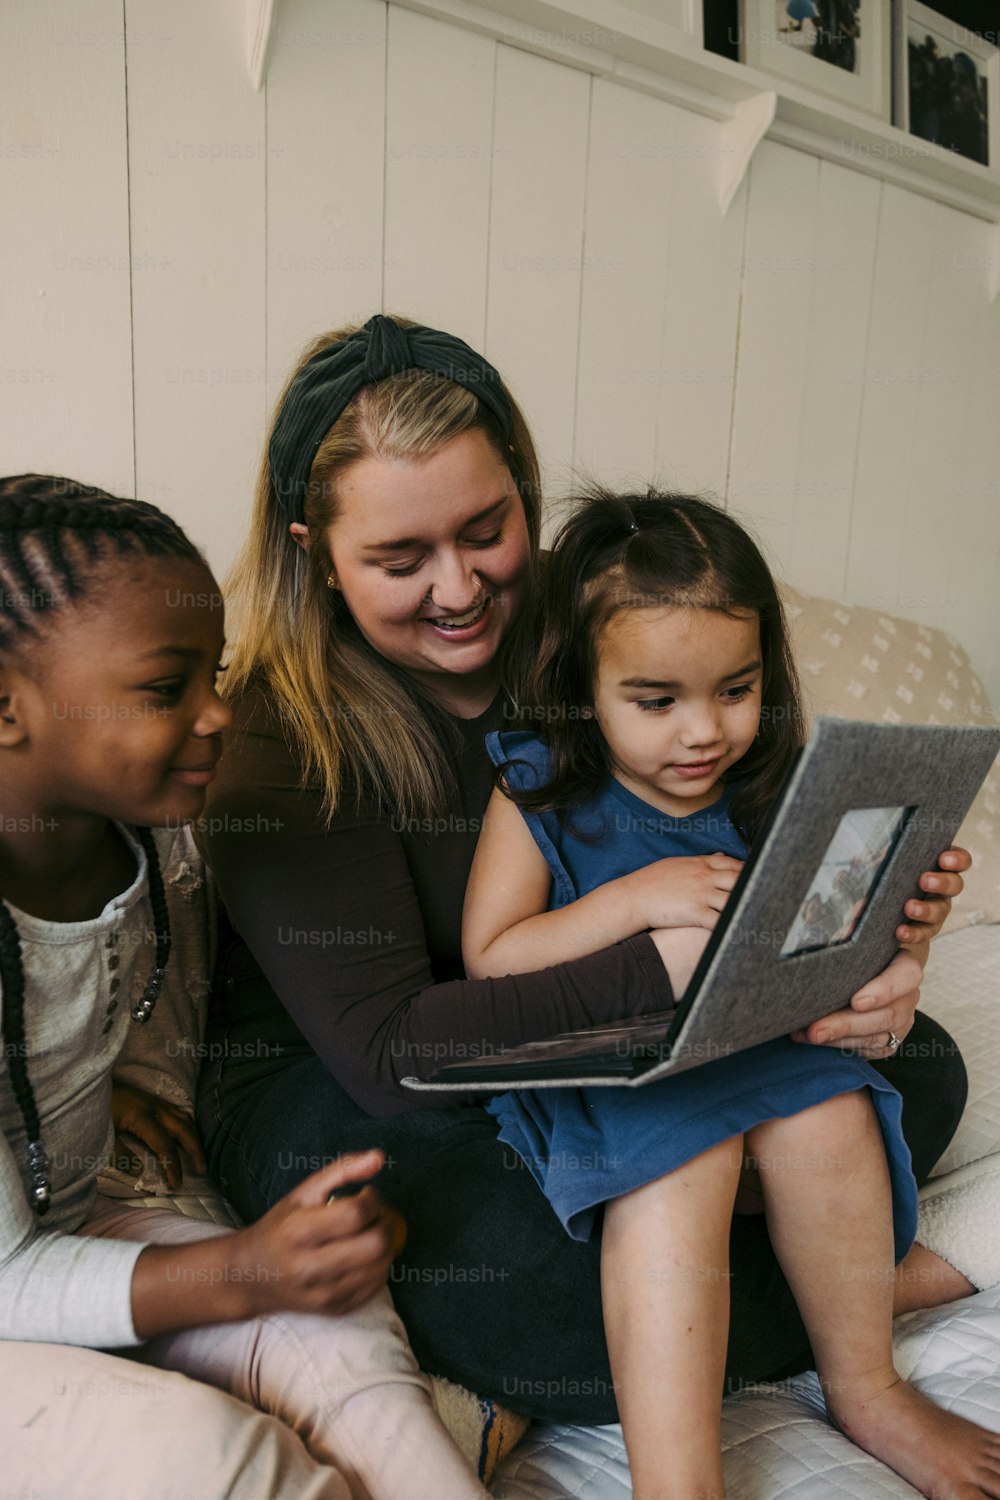 Eine Frau und zwei Kinder sitzen auf einem Bett und schauen auf einen Laptop